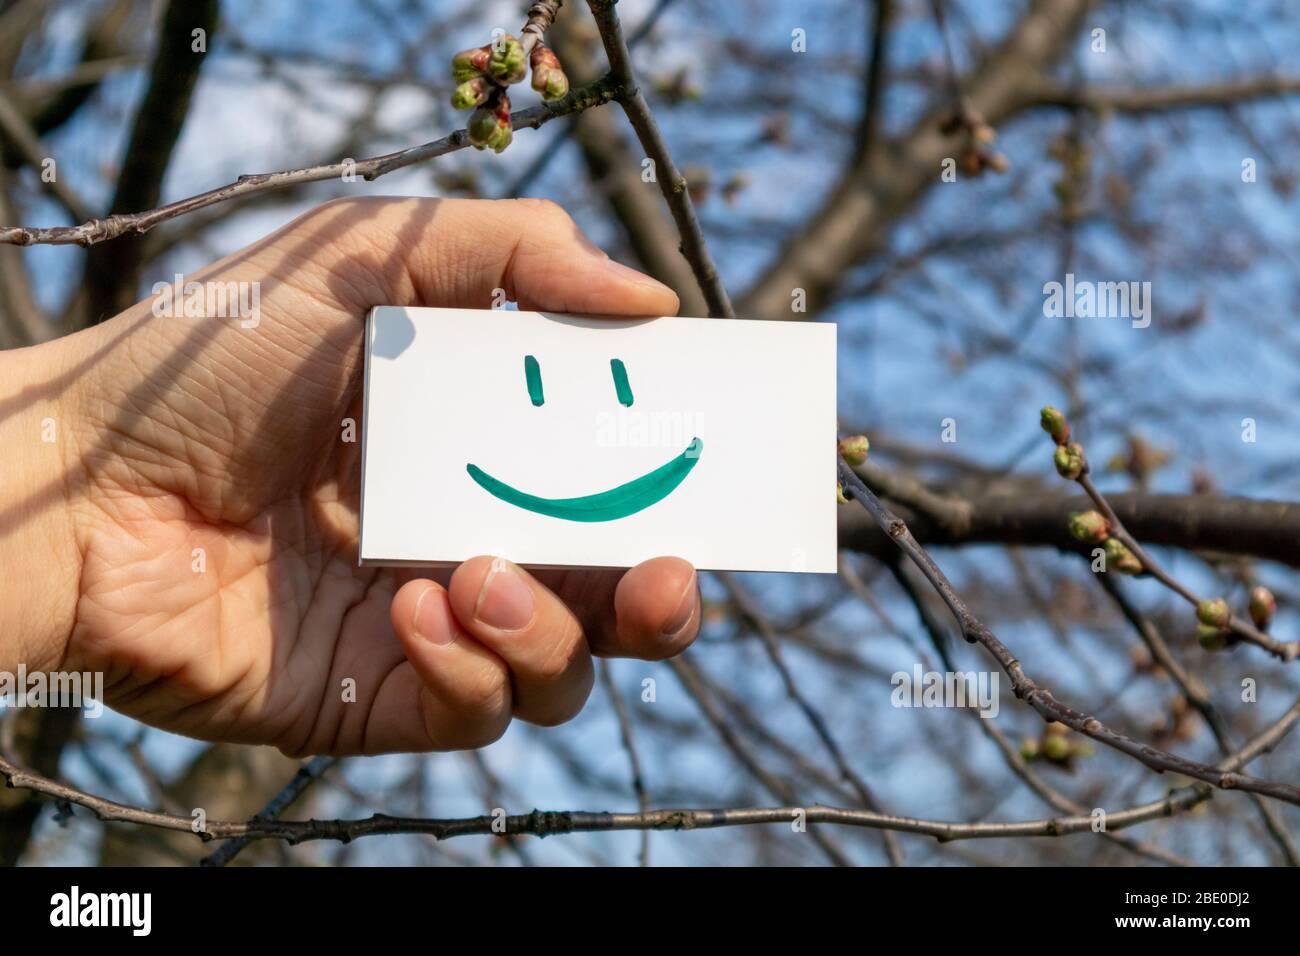 Happy Green Lächeln Emoji auf weißem Papier Karte hält in der Hand auf  sonnigen Frühling blauen Himmel Hintergrund. Positive Stimmung gute  Wetterzeit Stockfotografie - Alamy